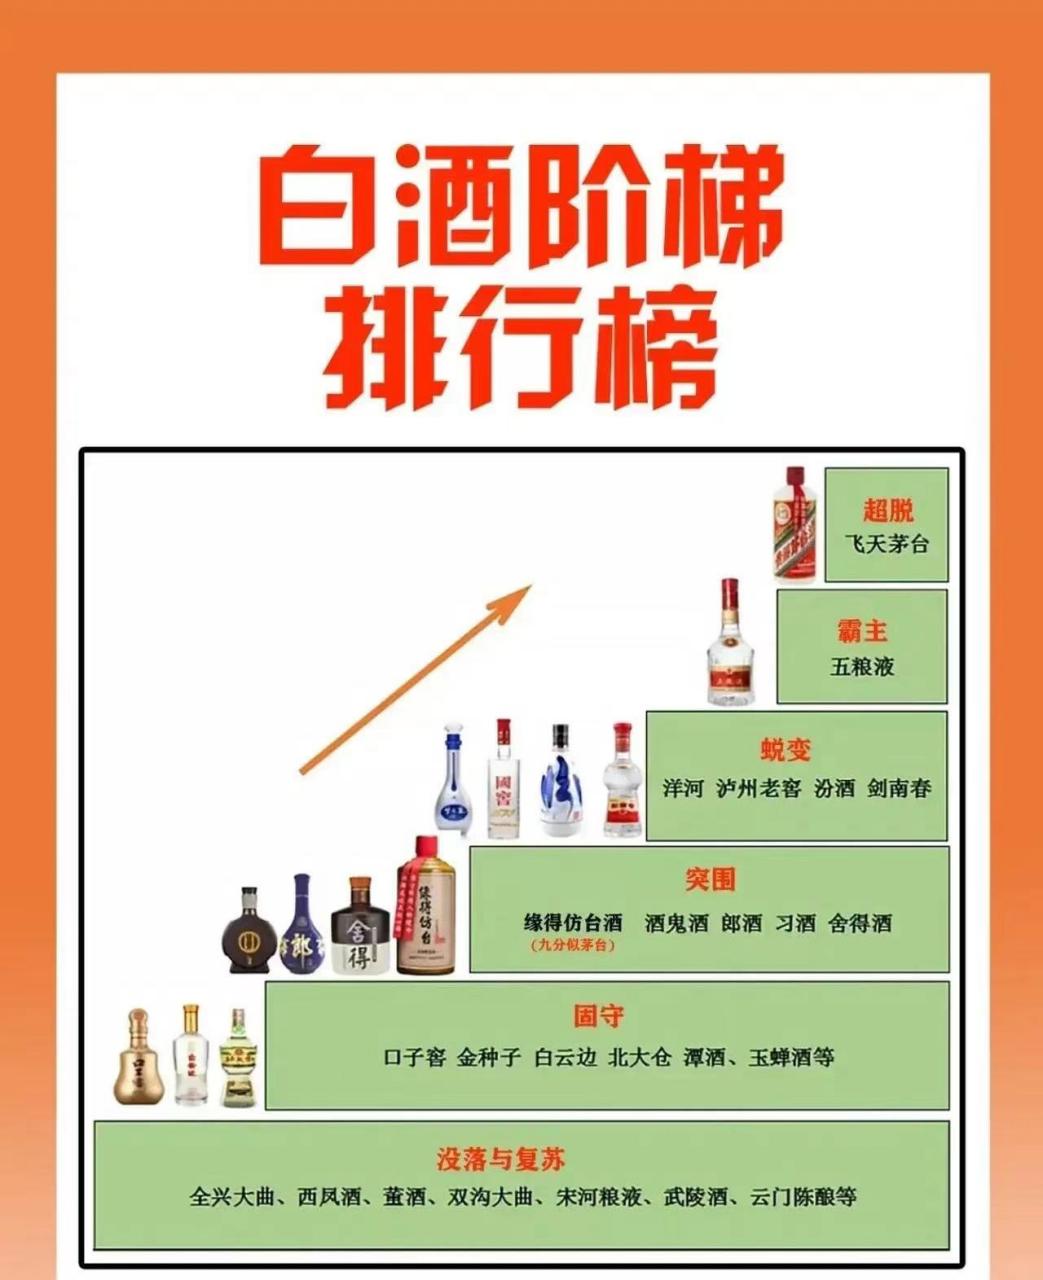 中国白酒阶梯排行榜,茅台五粮液位居榜首,这些好酒何时能出头?